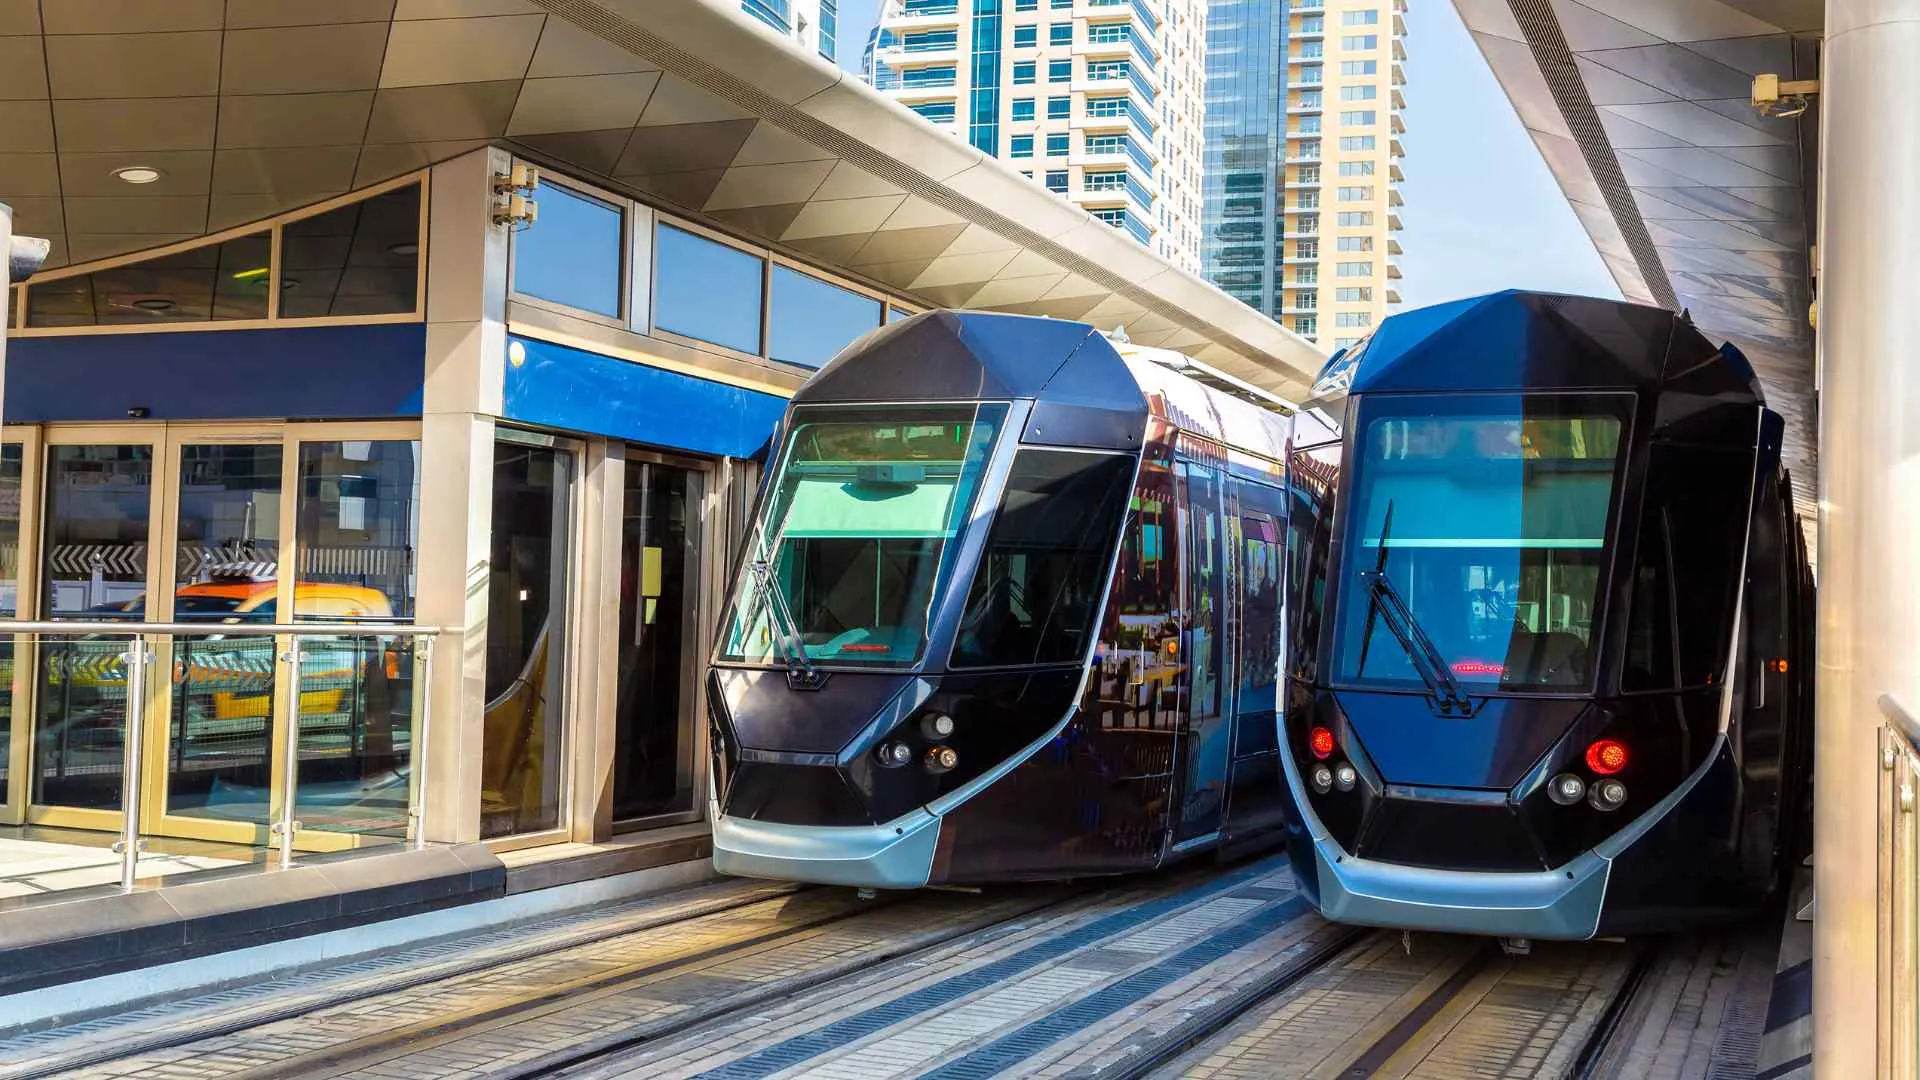 Dubai trams